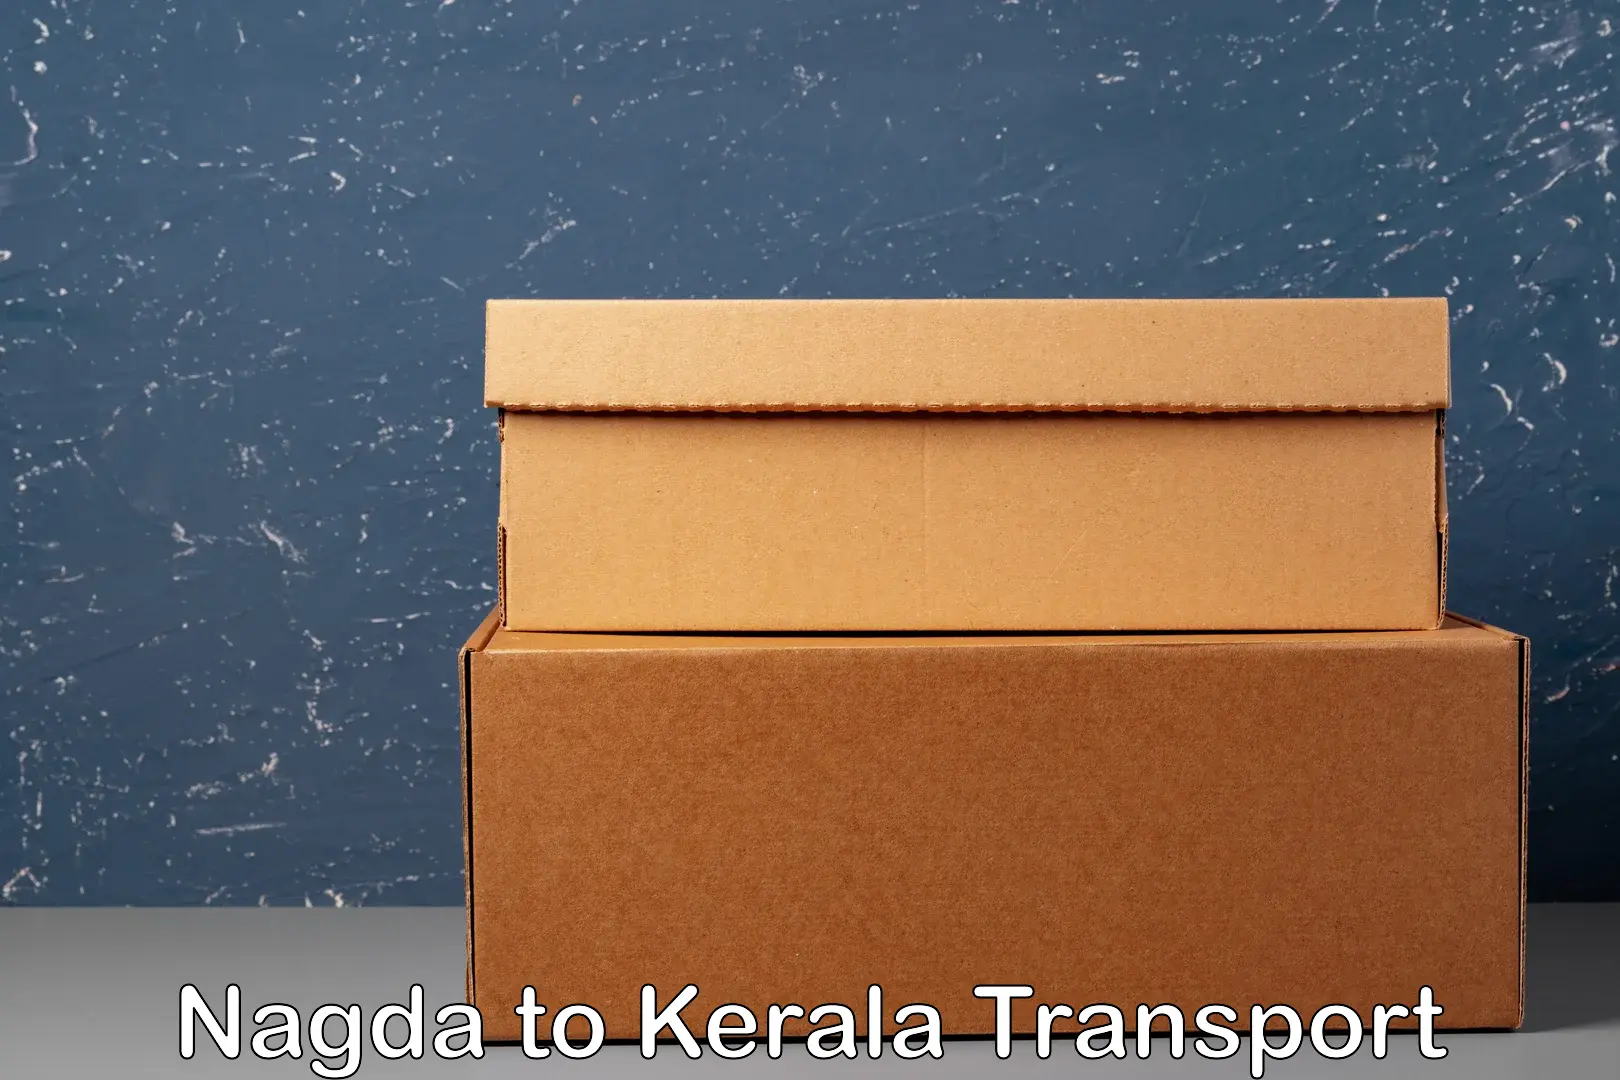 Door to door transport services Nagda to Kerala